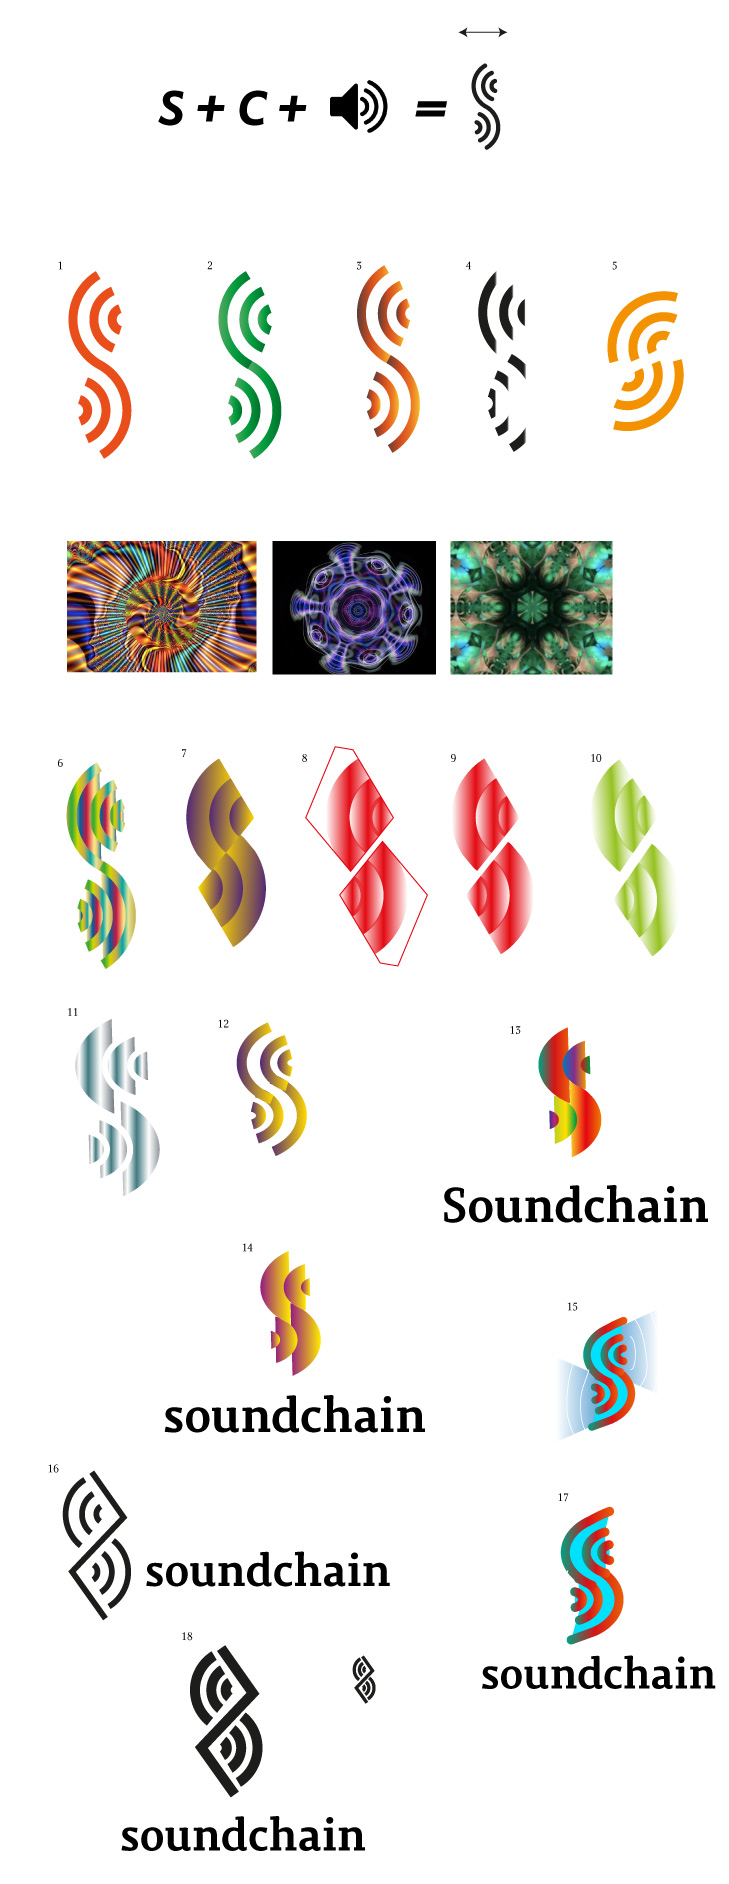 soundchain process 01